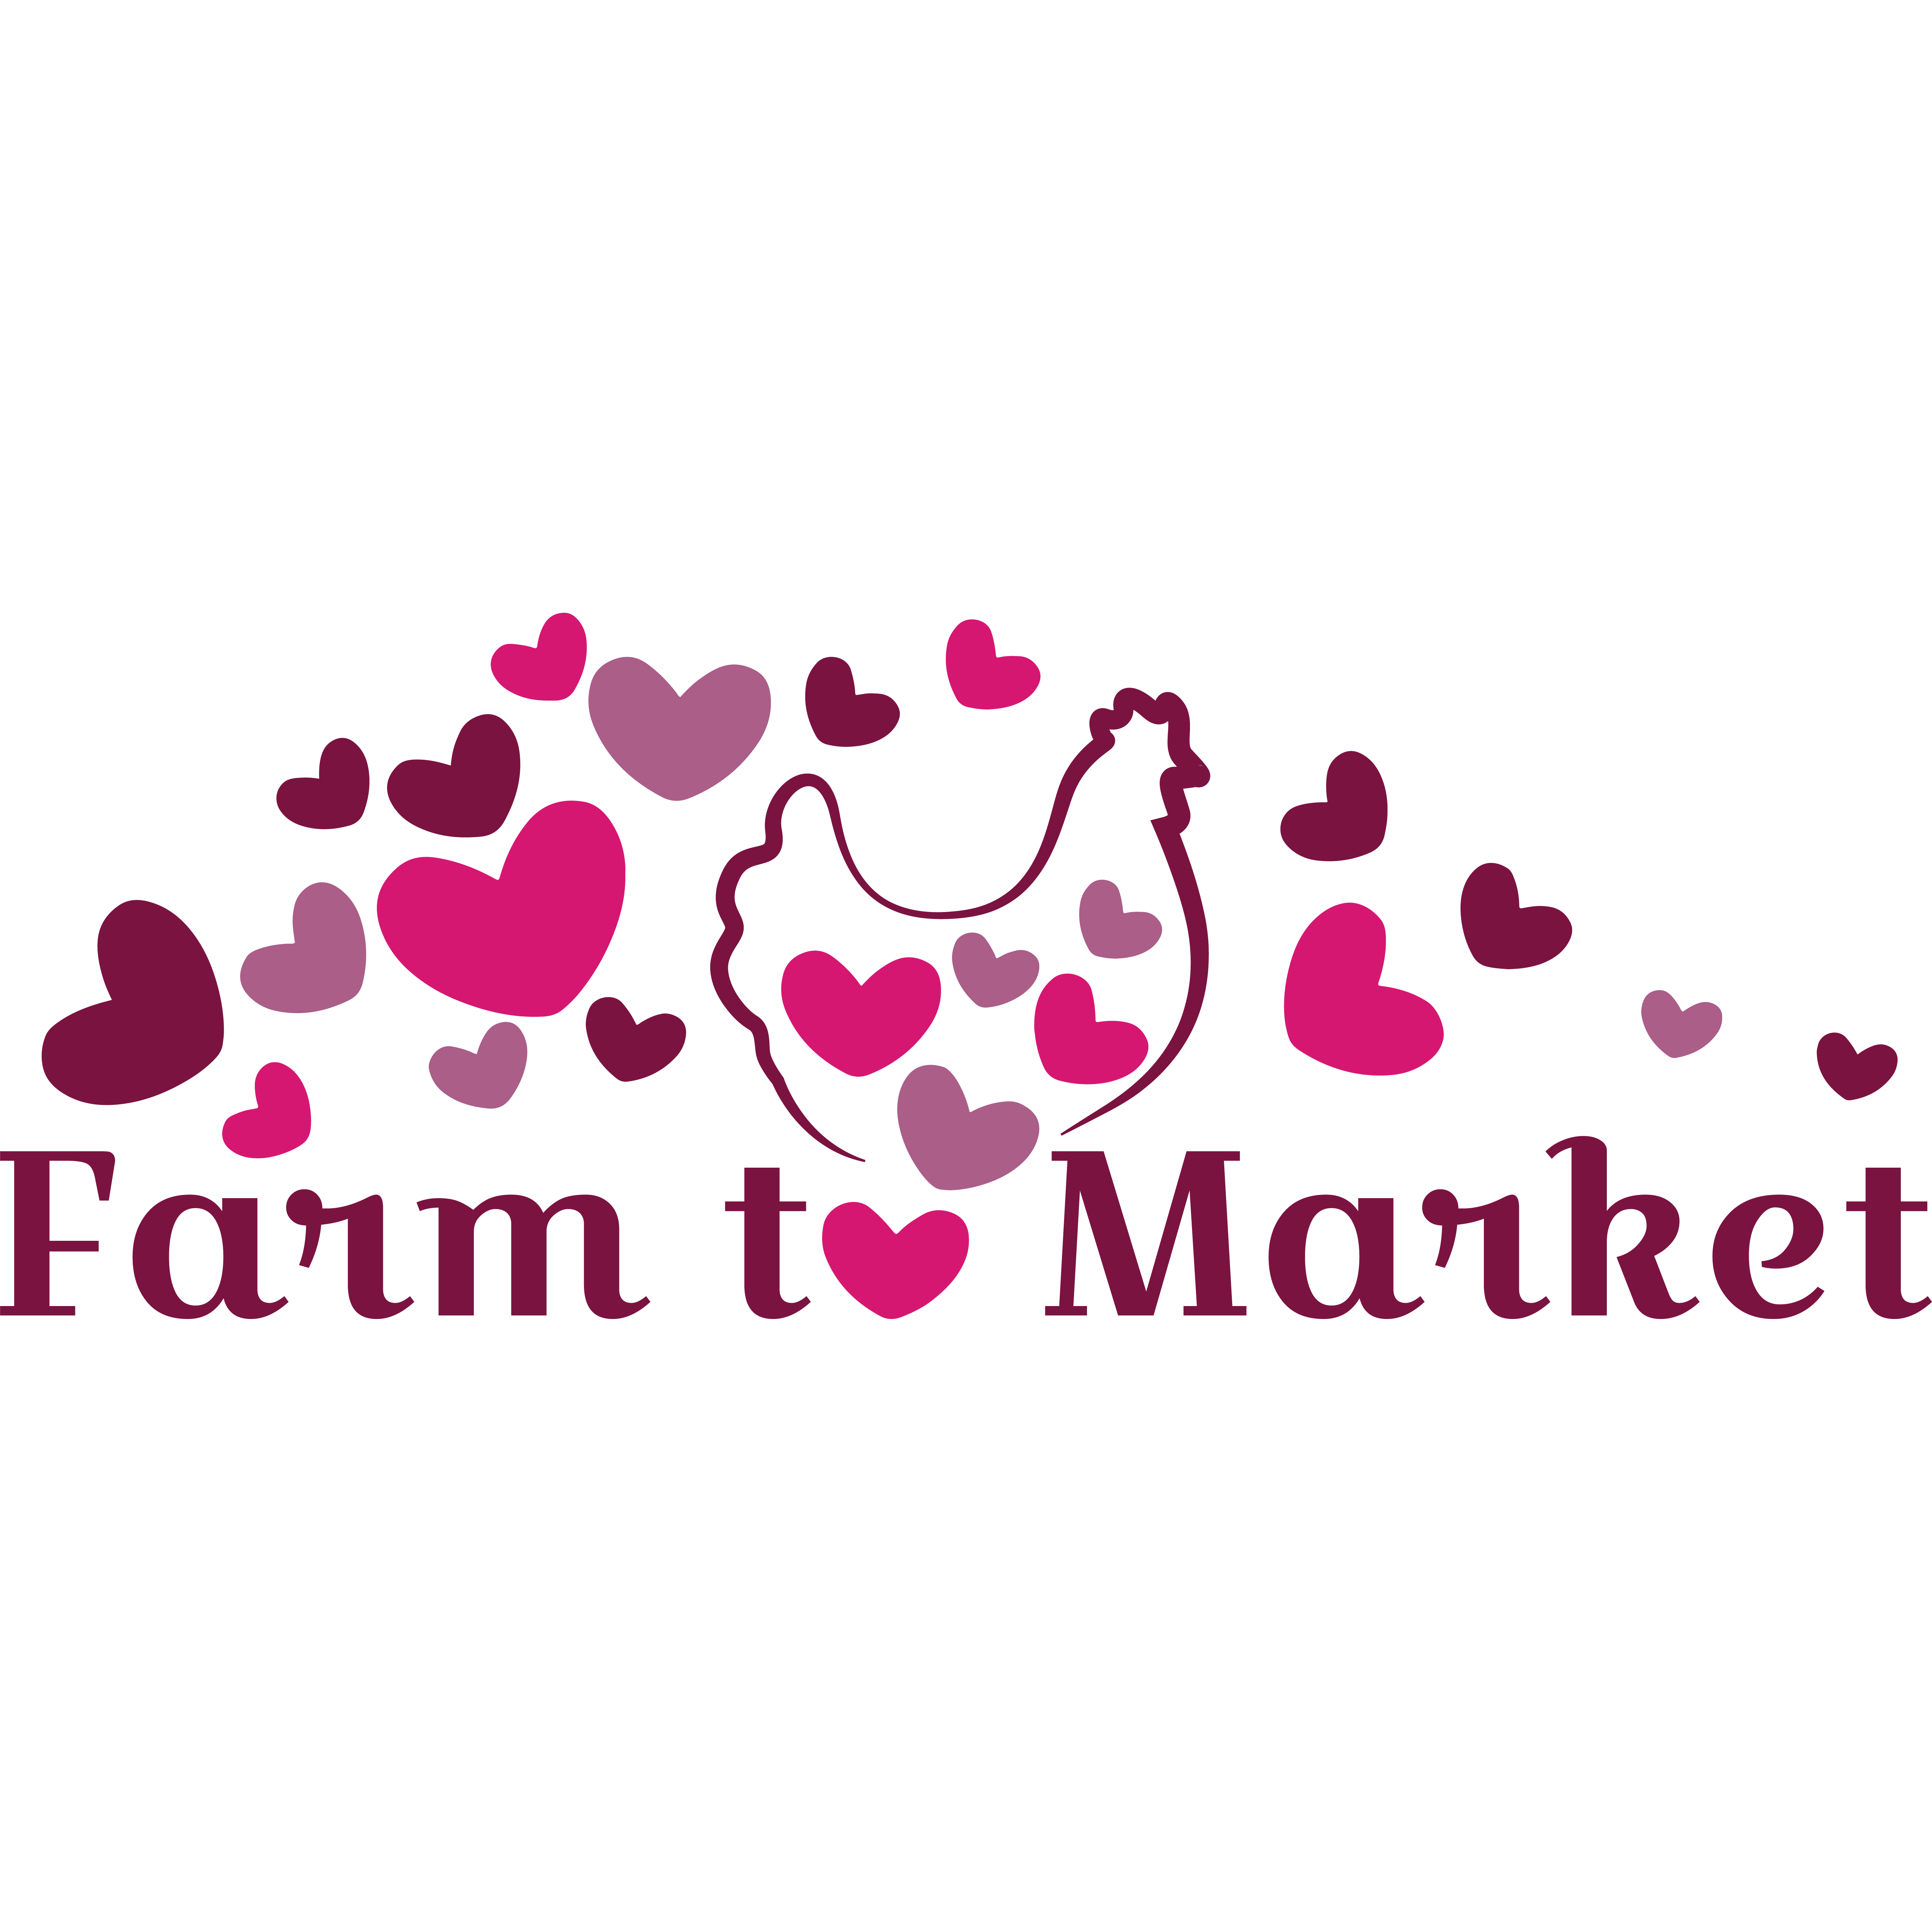 Farm to Market Logo